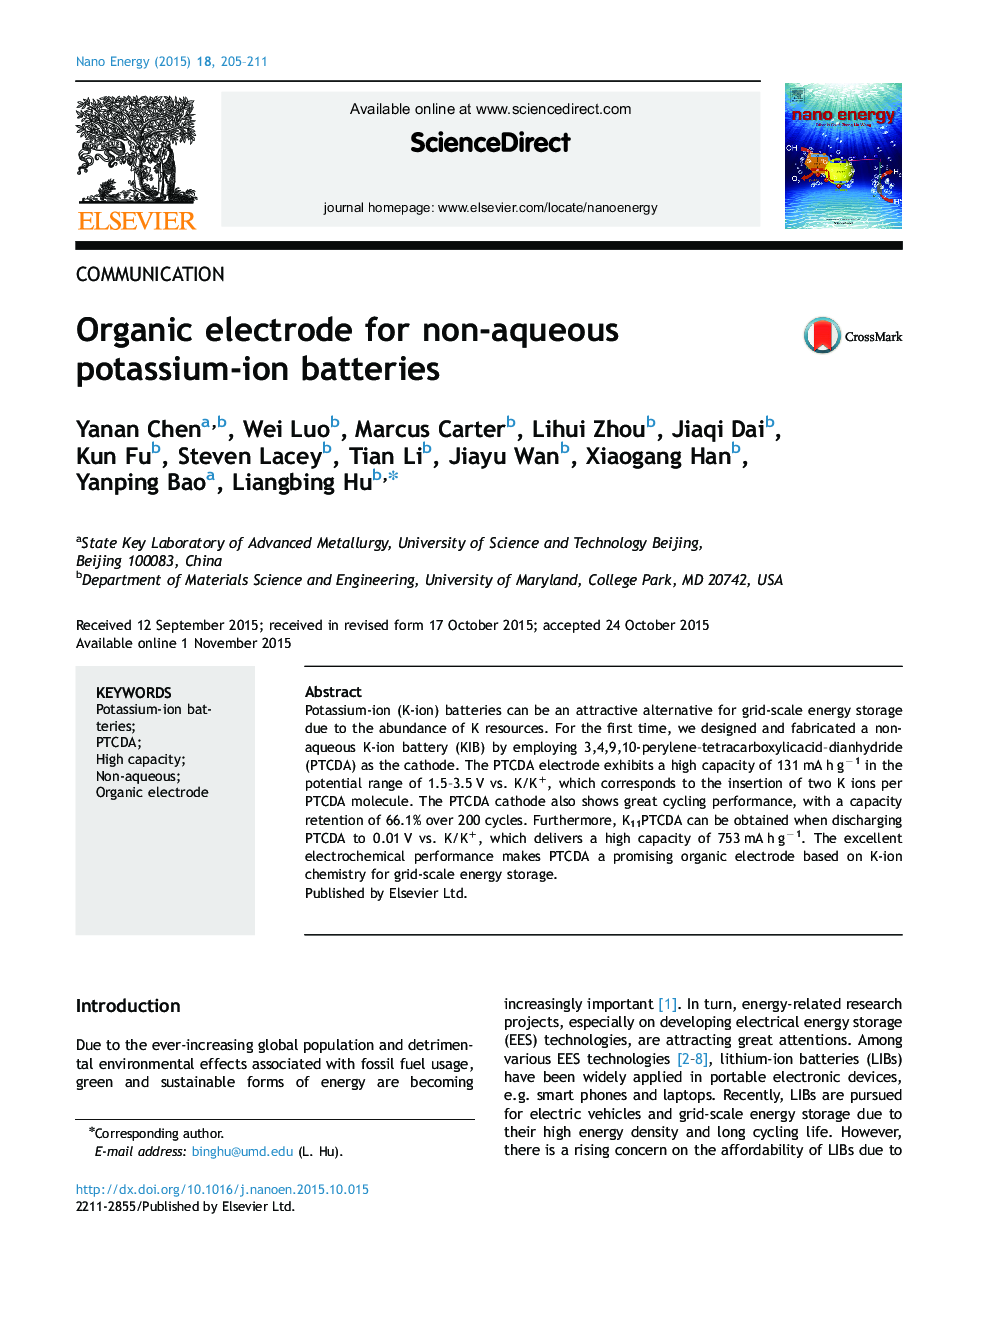 Organic electrode for non-aqueous potassium-ion batteries